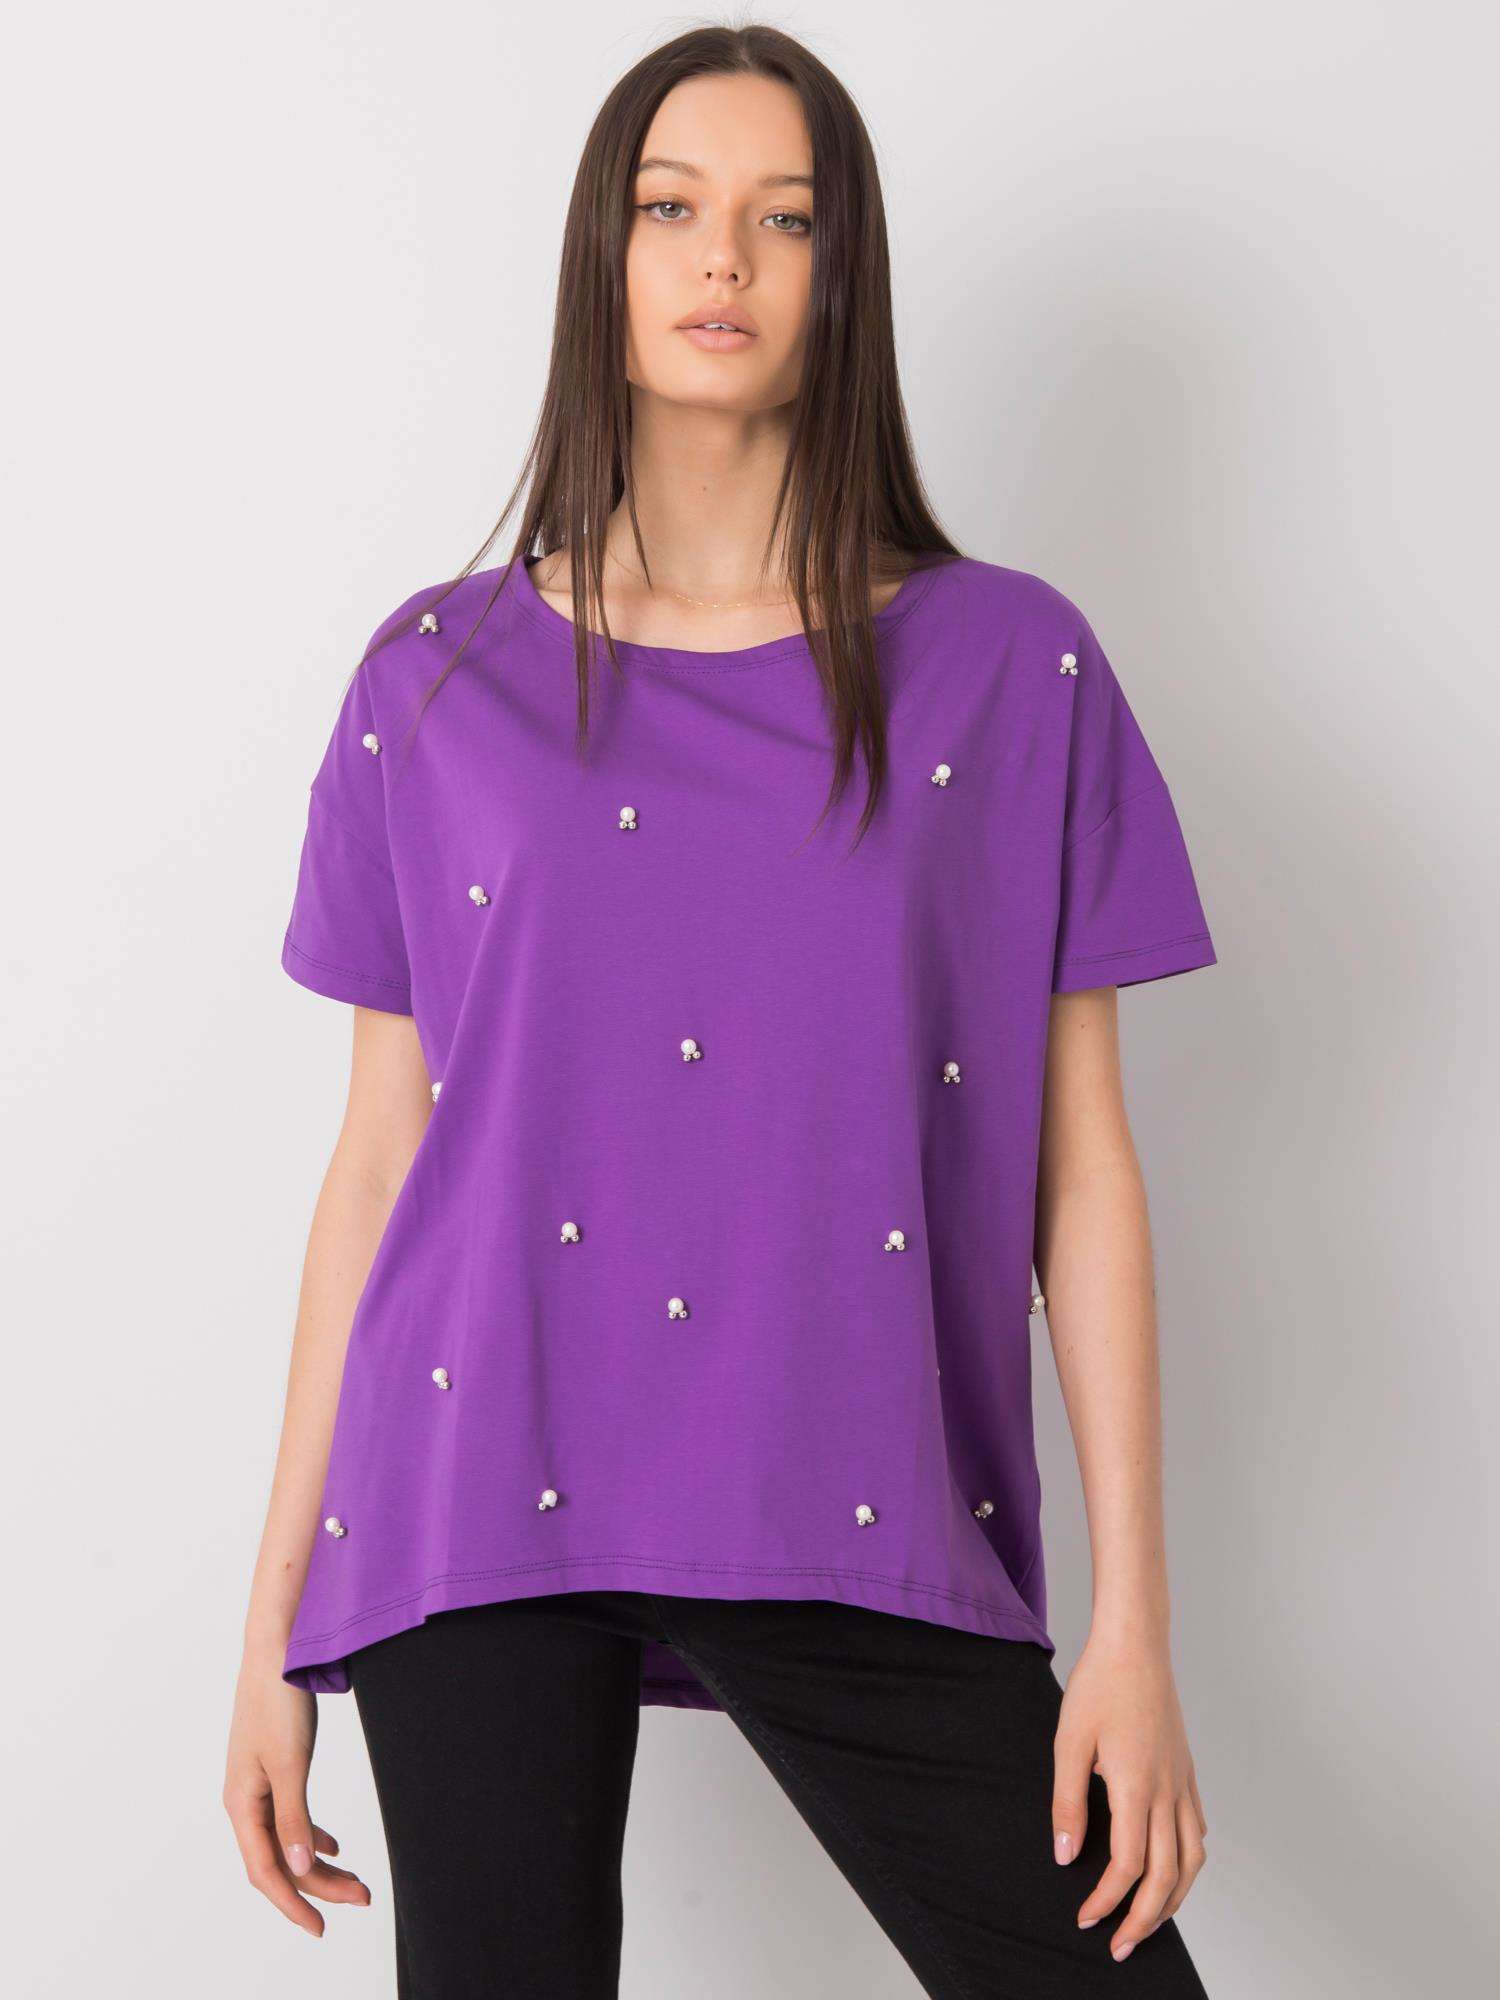 Fialové tričko s perličkami FA-BZ-7059.33P-violet Velikost: ONE SIZE